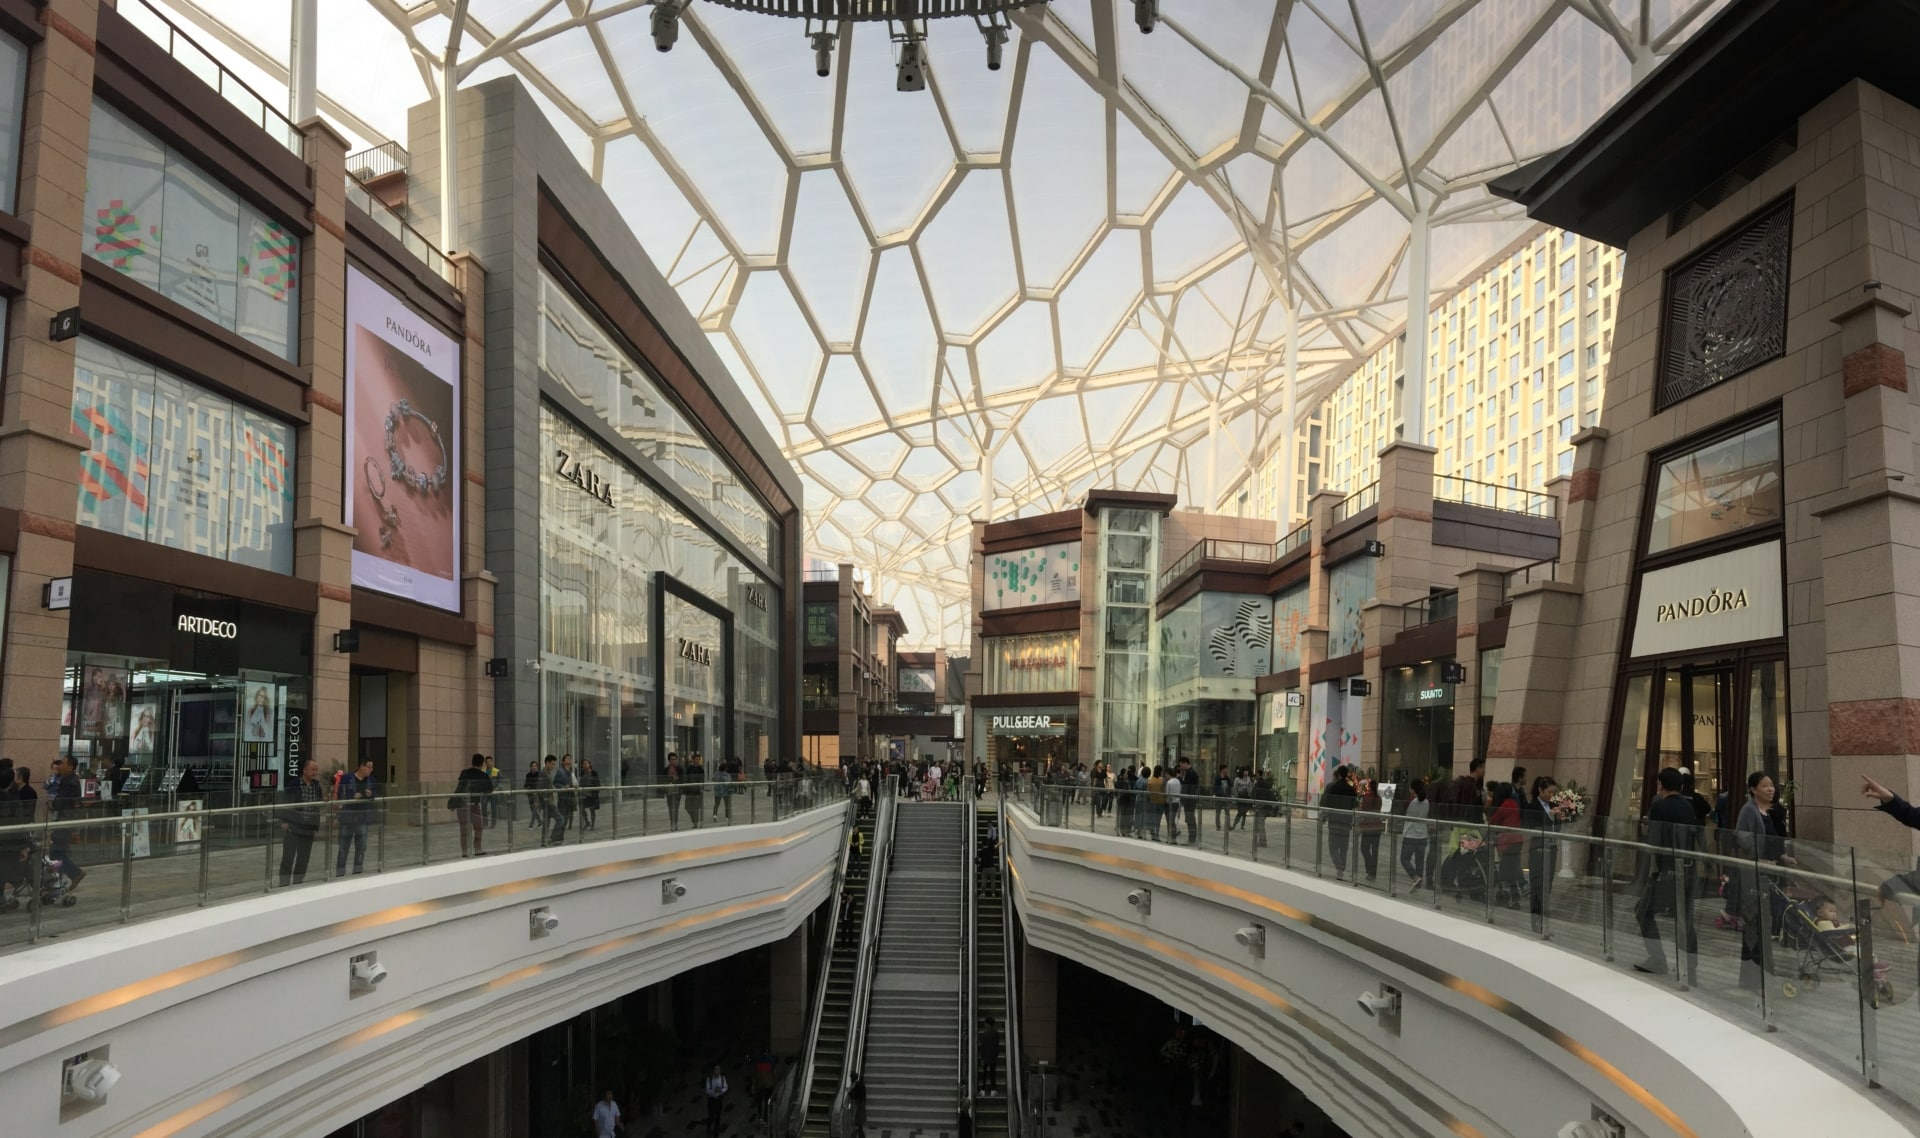 Der erste ETFE-Dach im Nordwesten Chinas wurde 2016 fertiggestellt. Hervorragendes, einzigartiges Design für das Xi'an GPark-Einkaufszentrums.